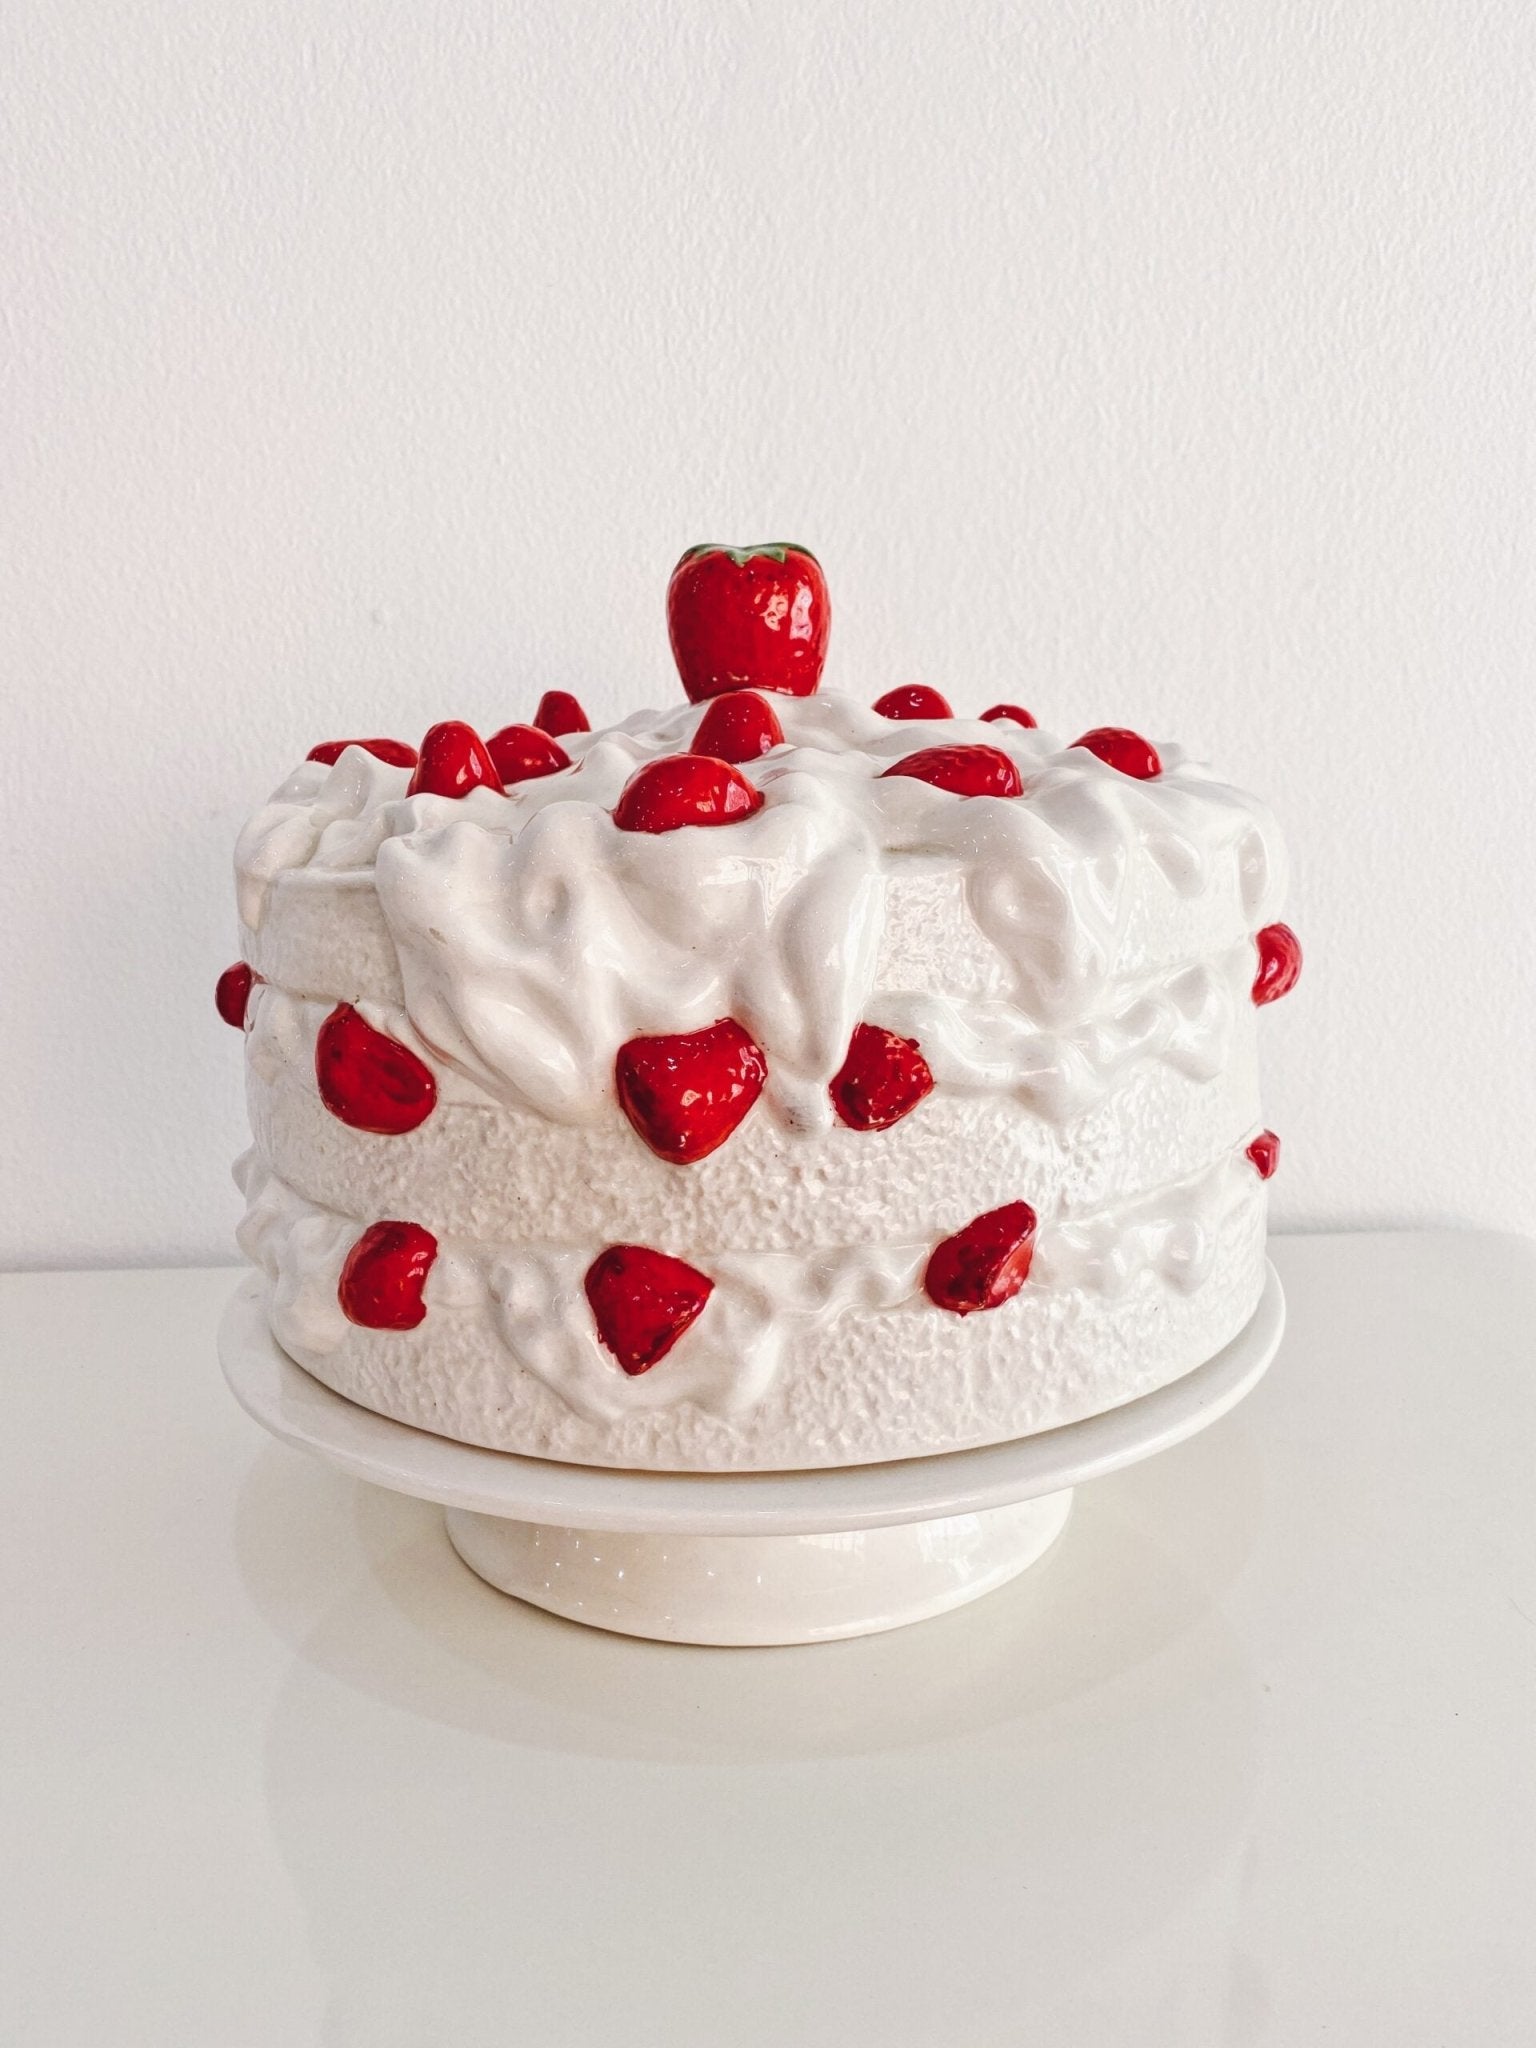 Strawberry Shortcake Cake Stand - Rehaus